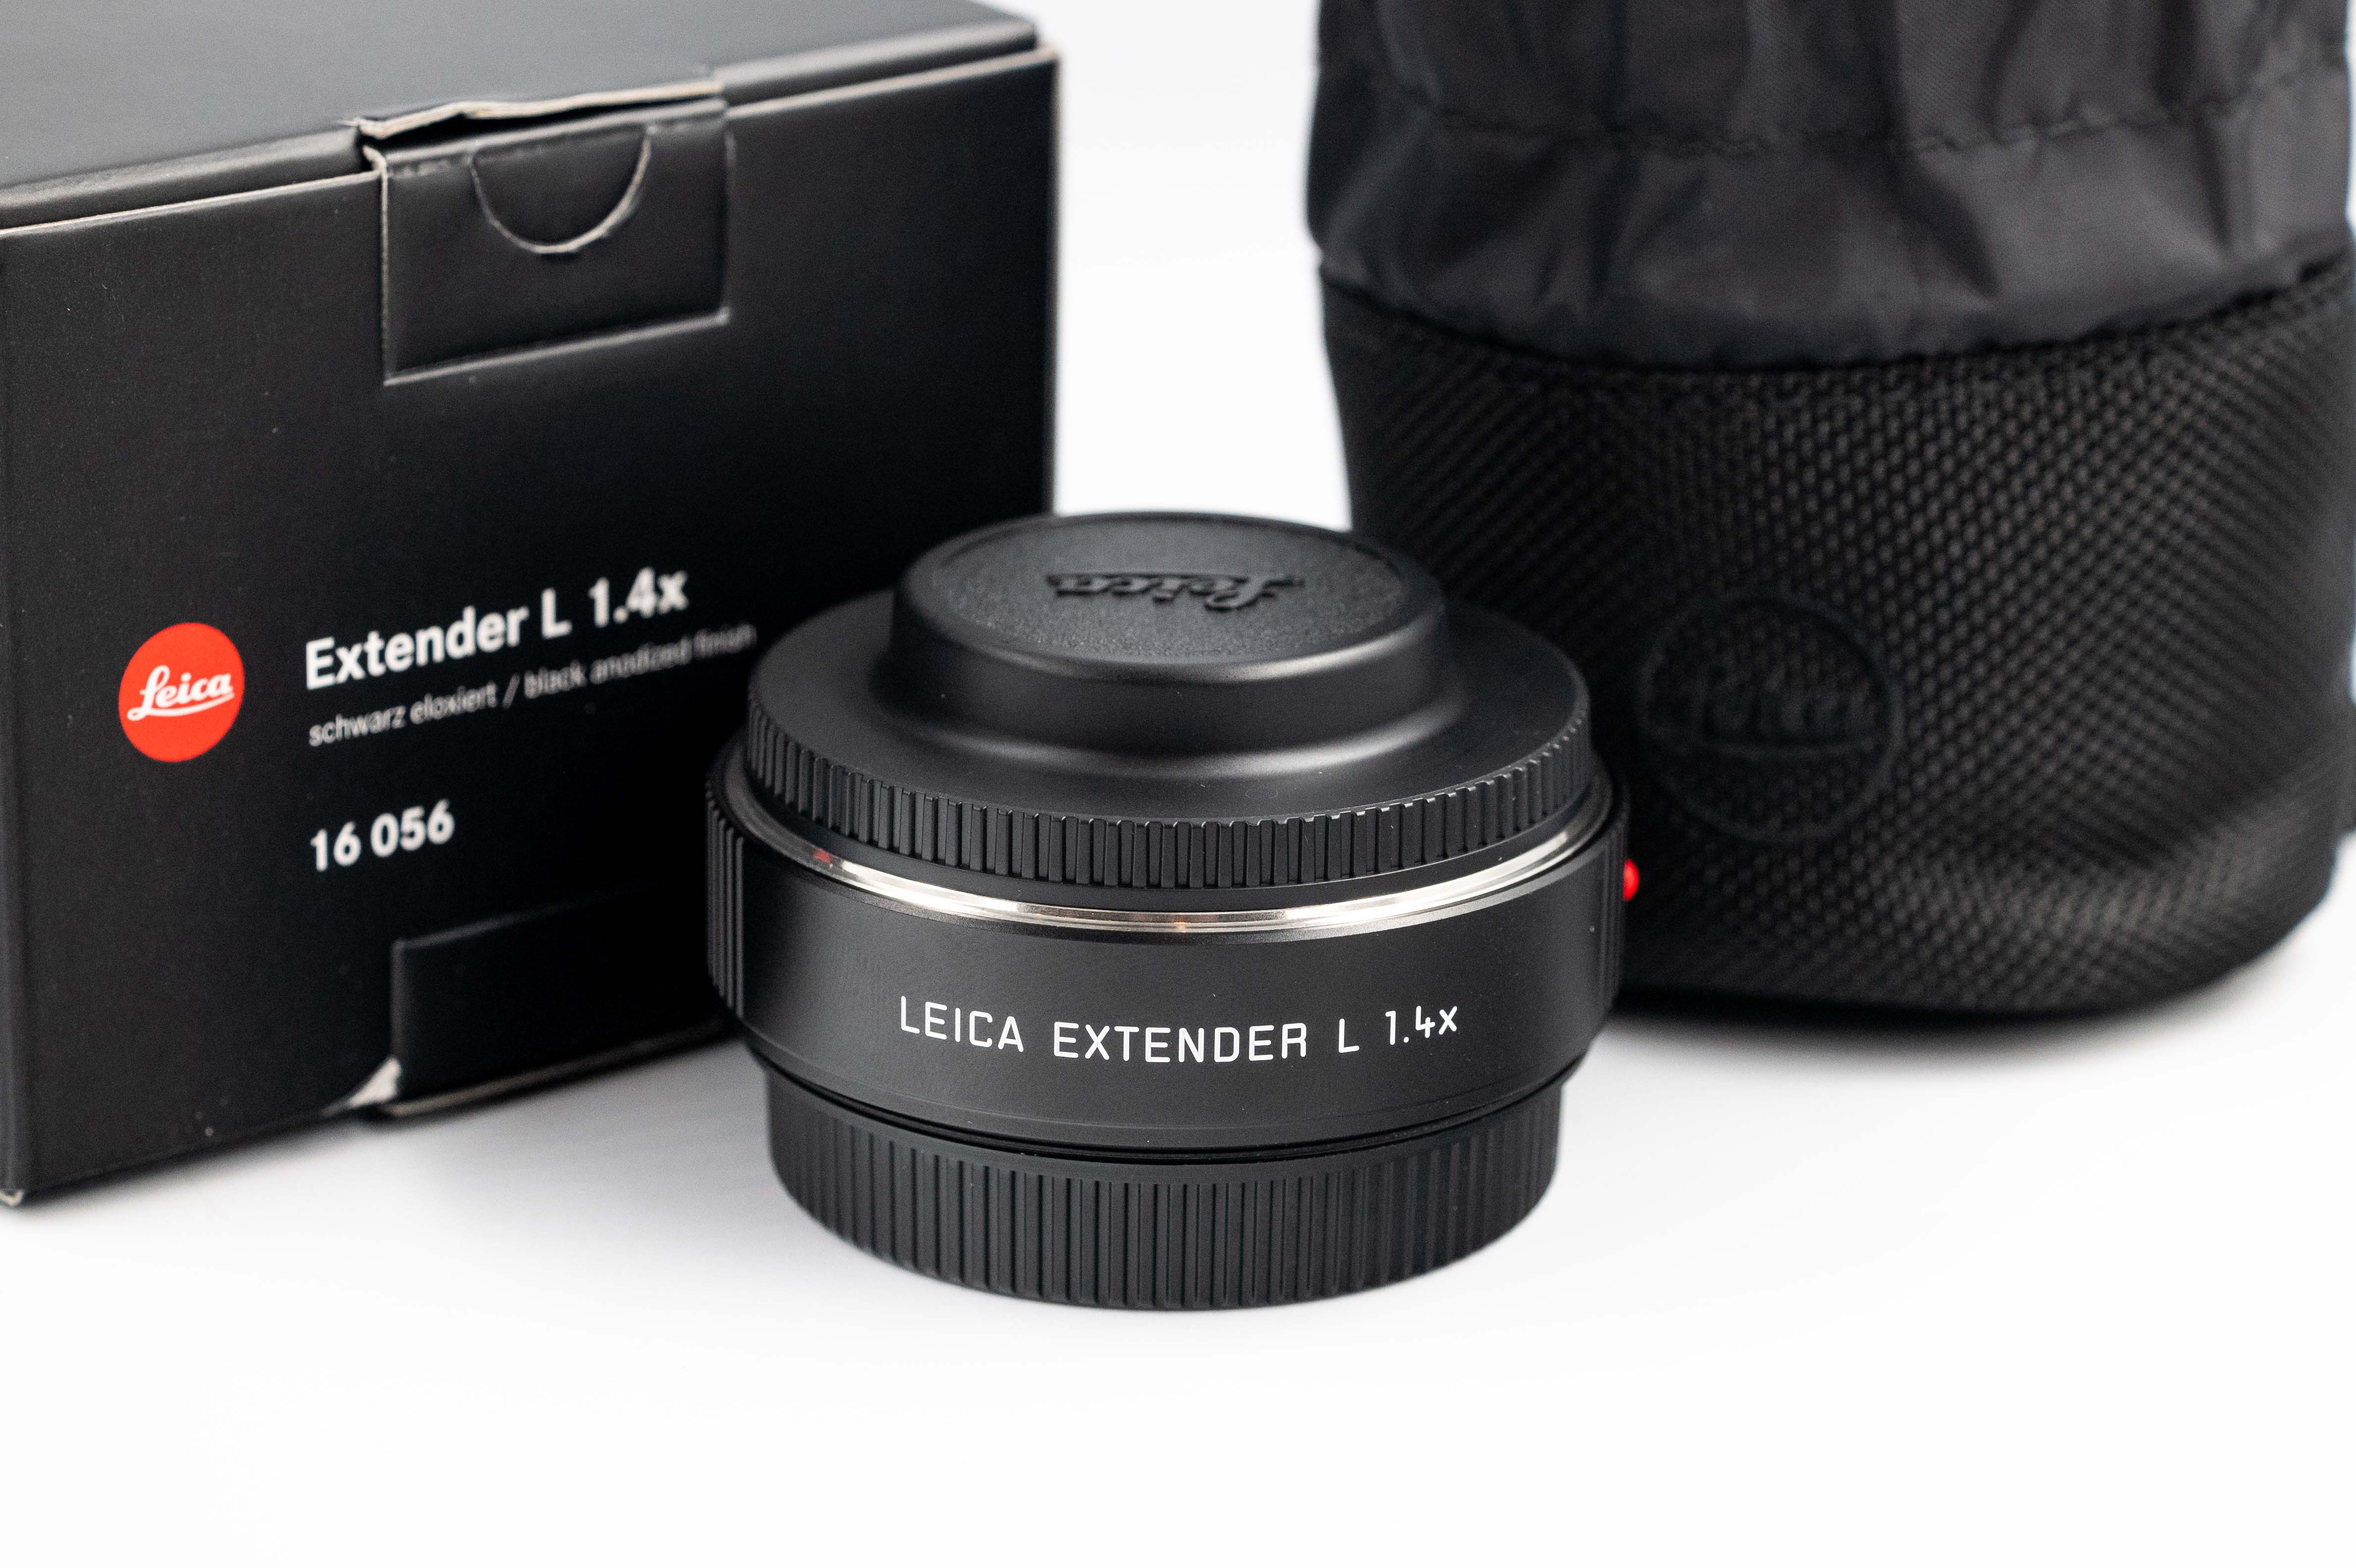 Leica Extender L 1.4x 16056